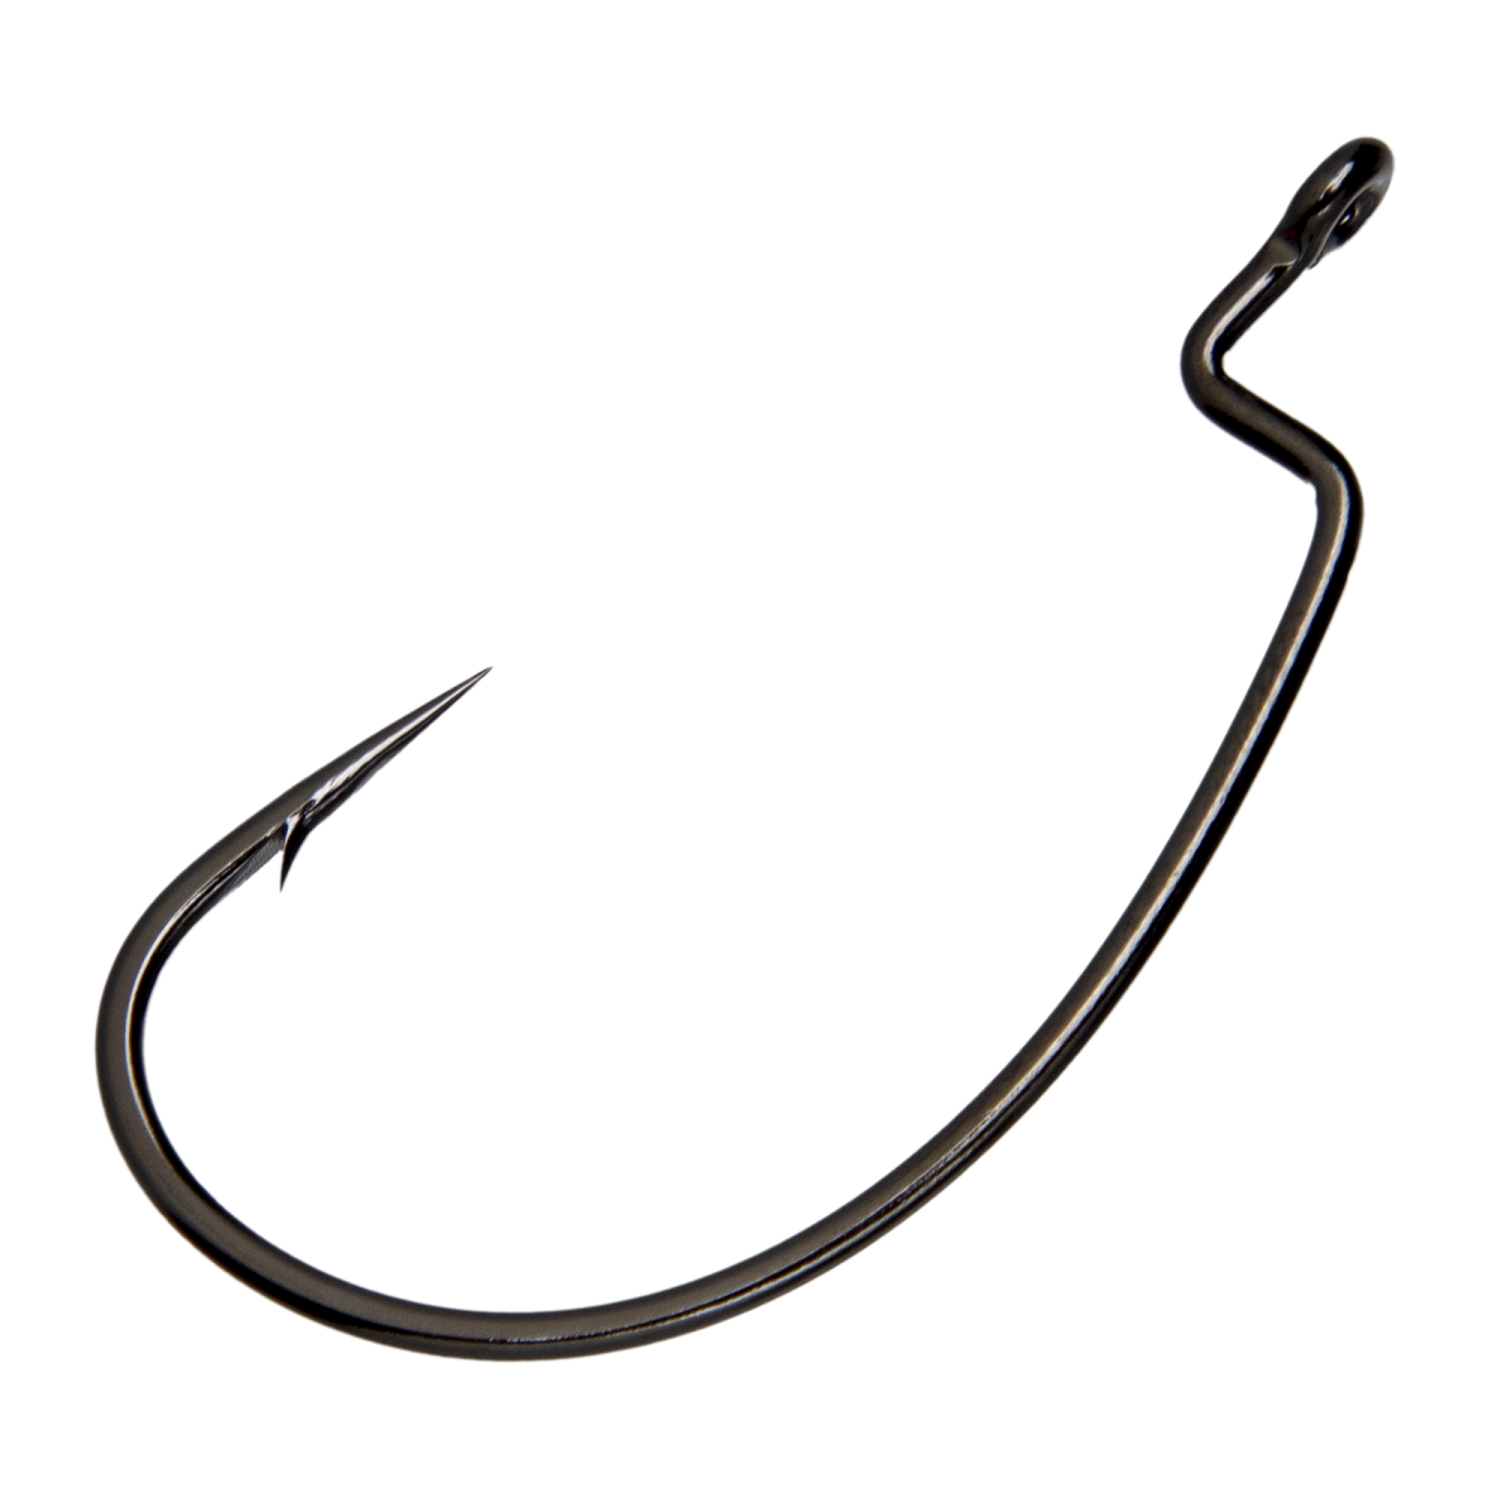 Крючок офсетный Decoy Kg Hyper Worm 13 #3/0 (5шт) крючки офсетные cobra l worm серия 2312 цвет nsb 02 0 3 шт